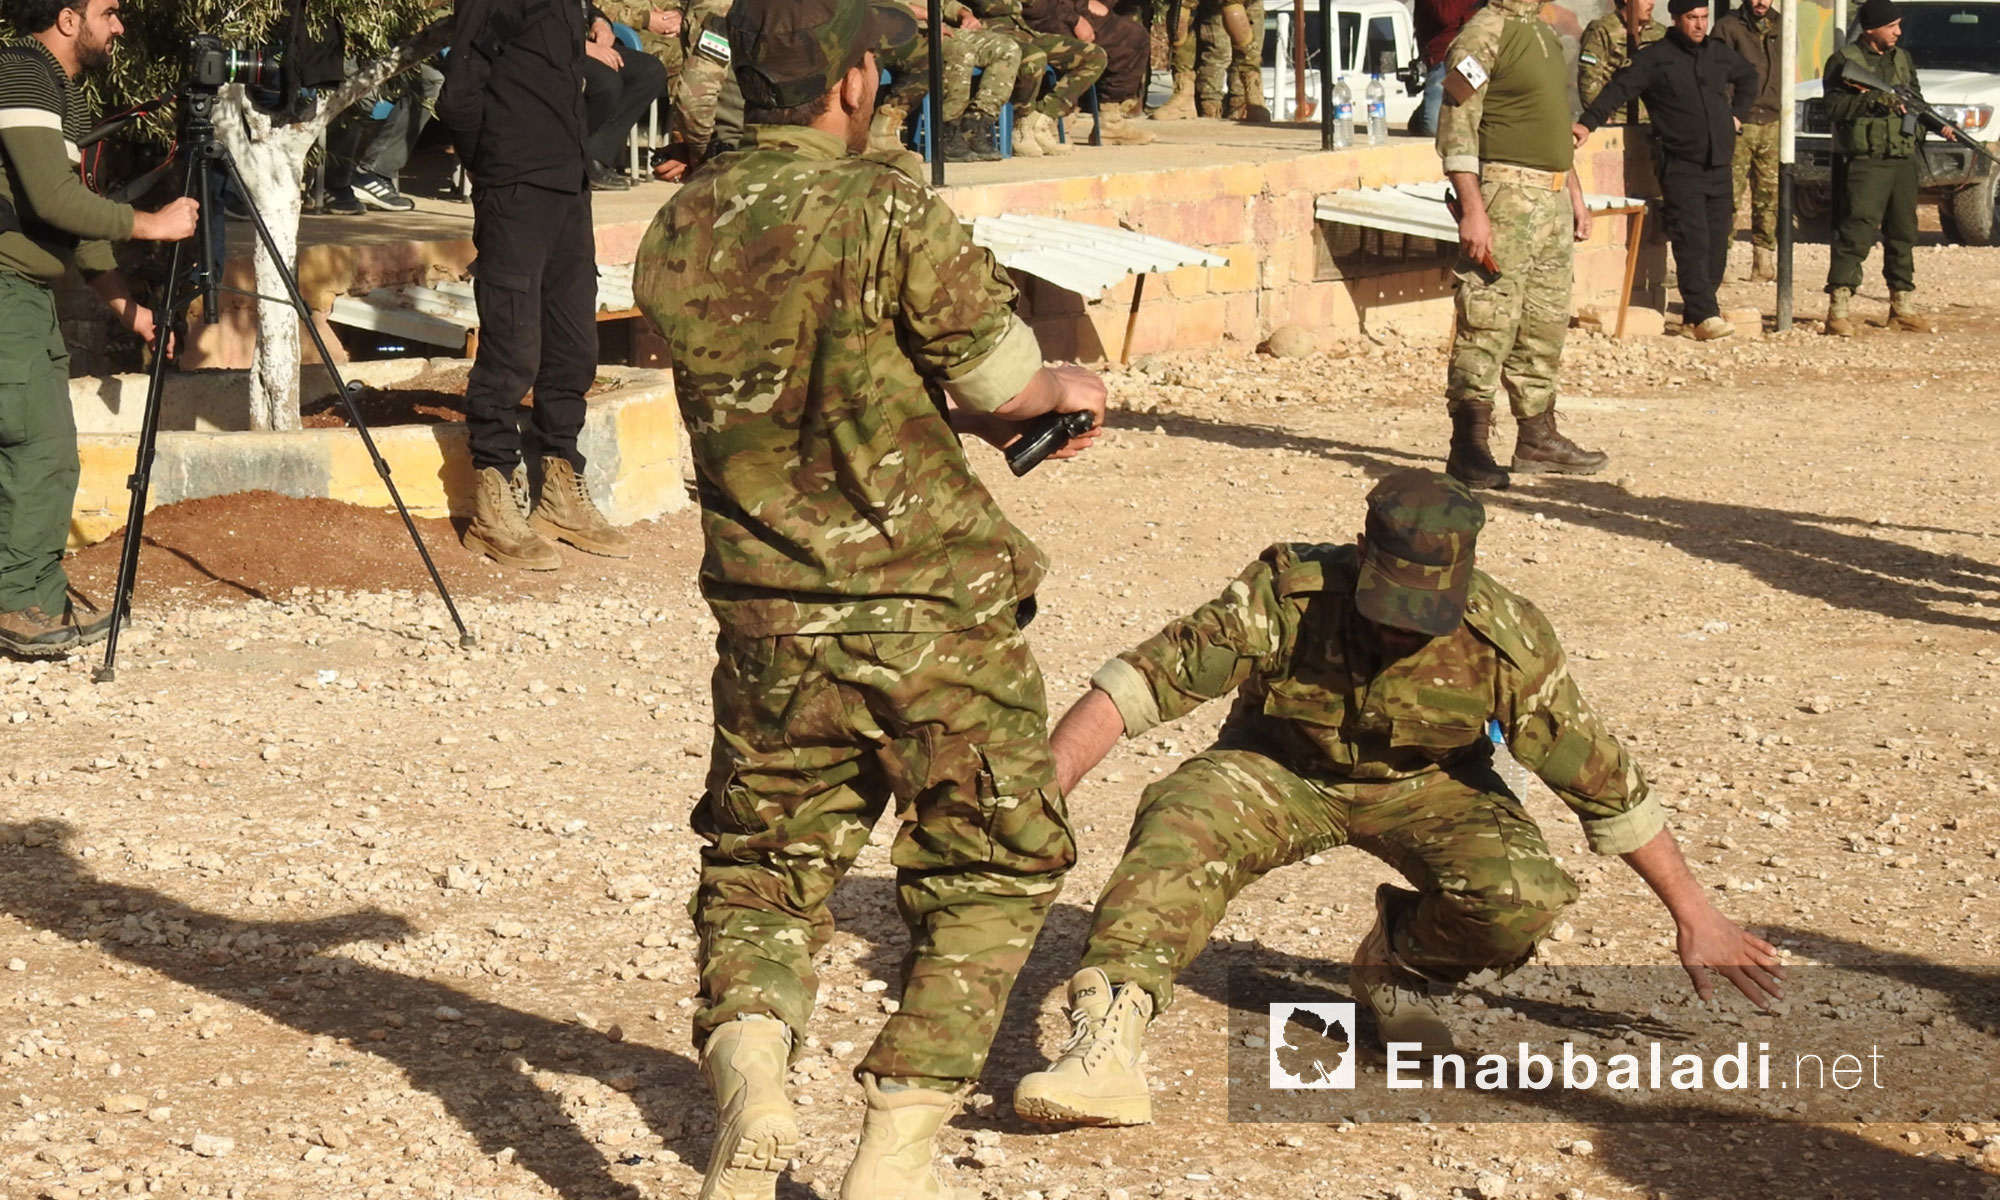 لواء المعتصم التابع للجيش السوري الحر يخرج مقاتلين جدد خضعوا لدورة تدريبية شمالي حلب - 27 كانون الأول 2017 (عنب بلدي)